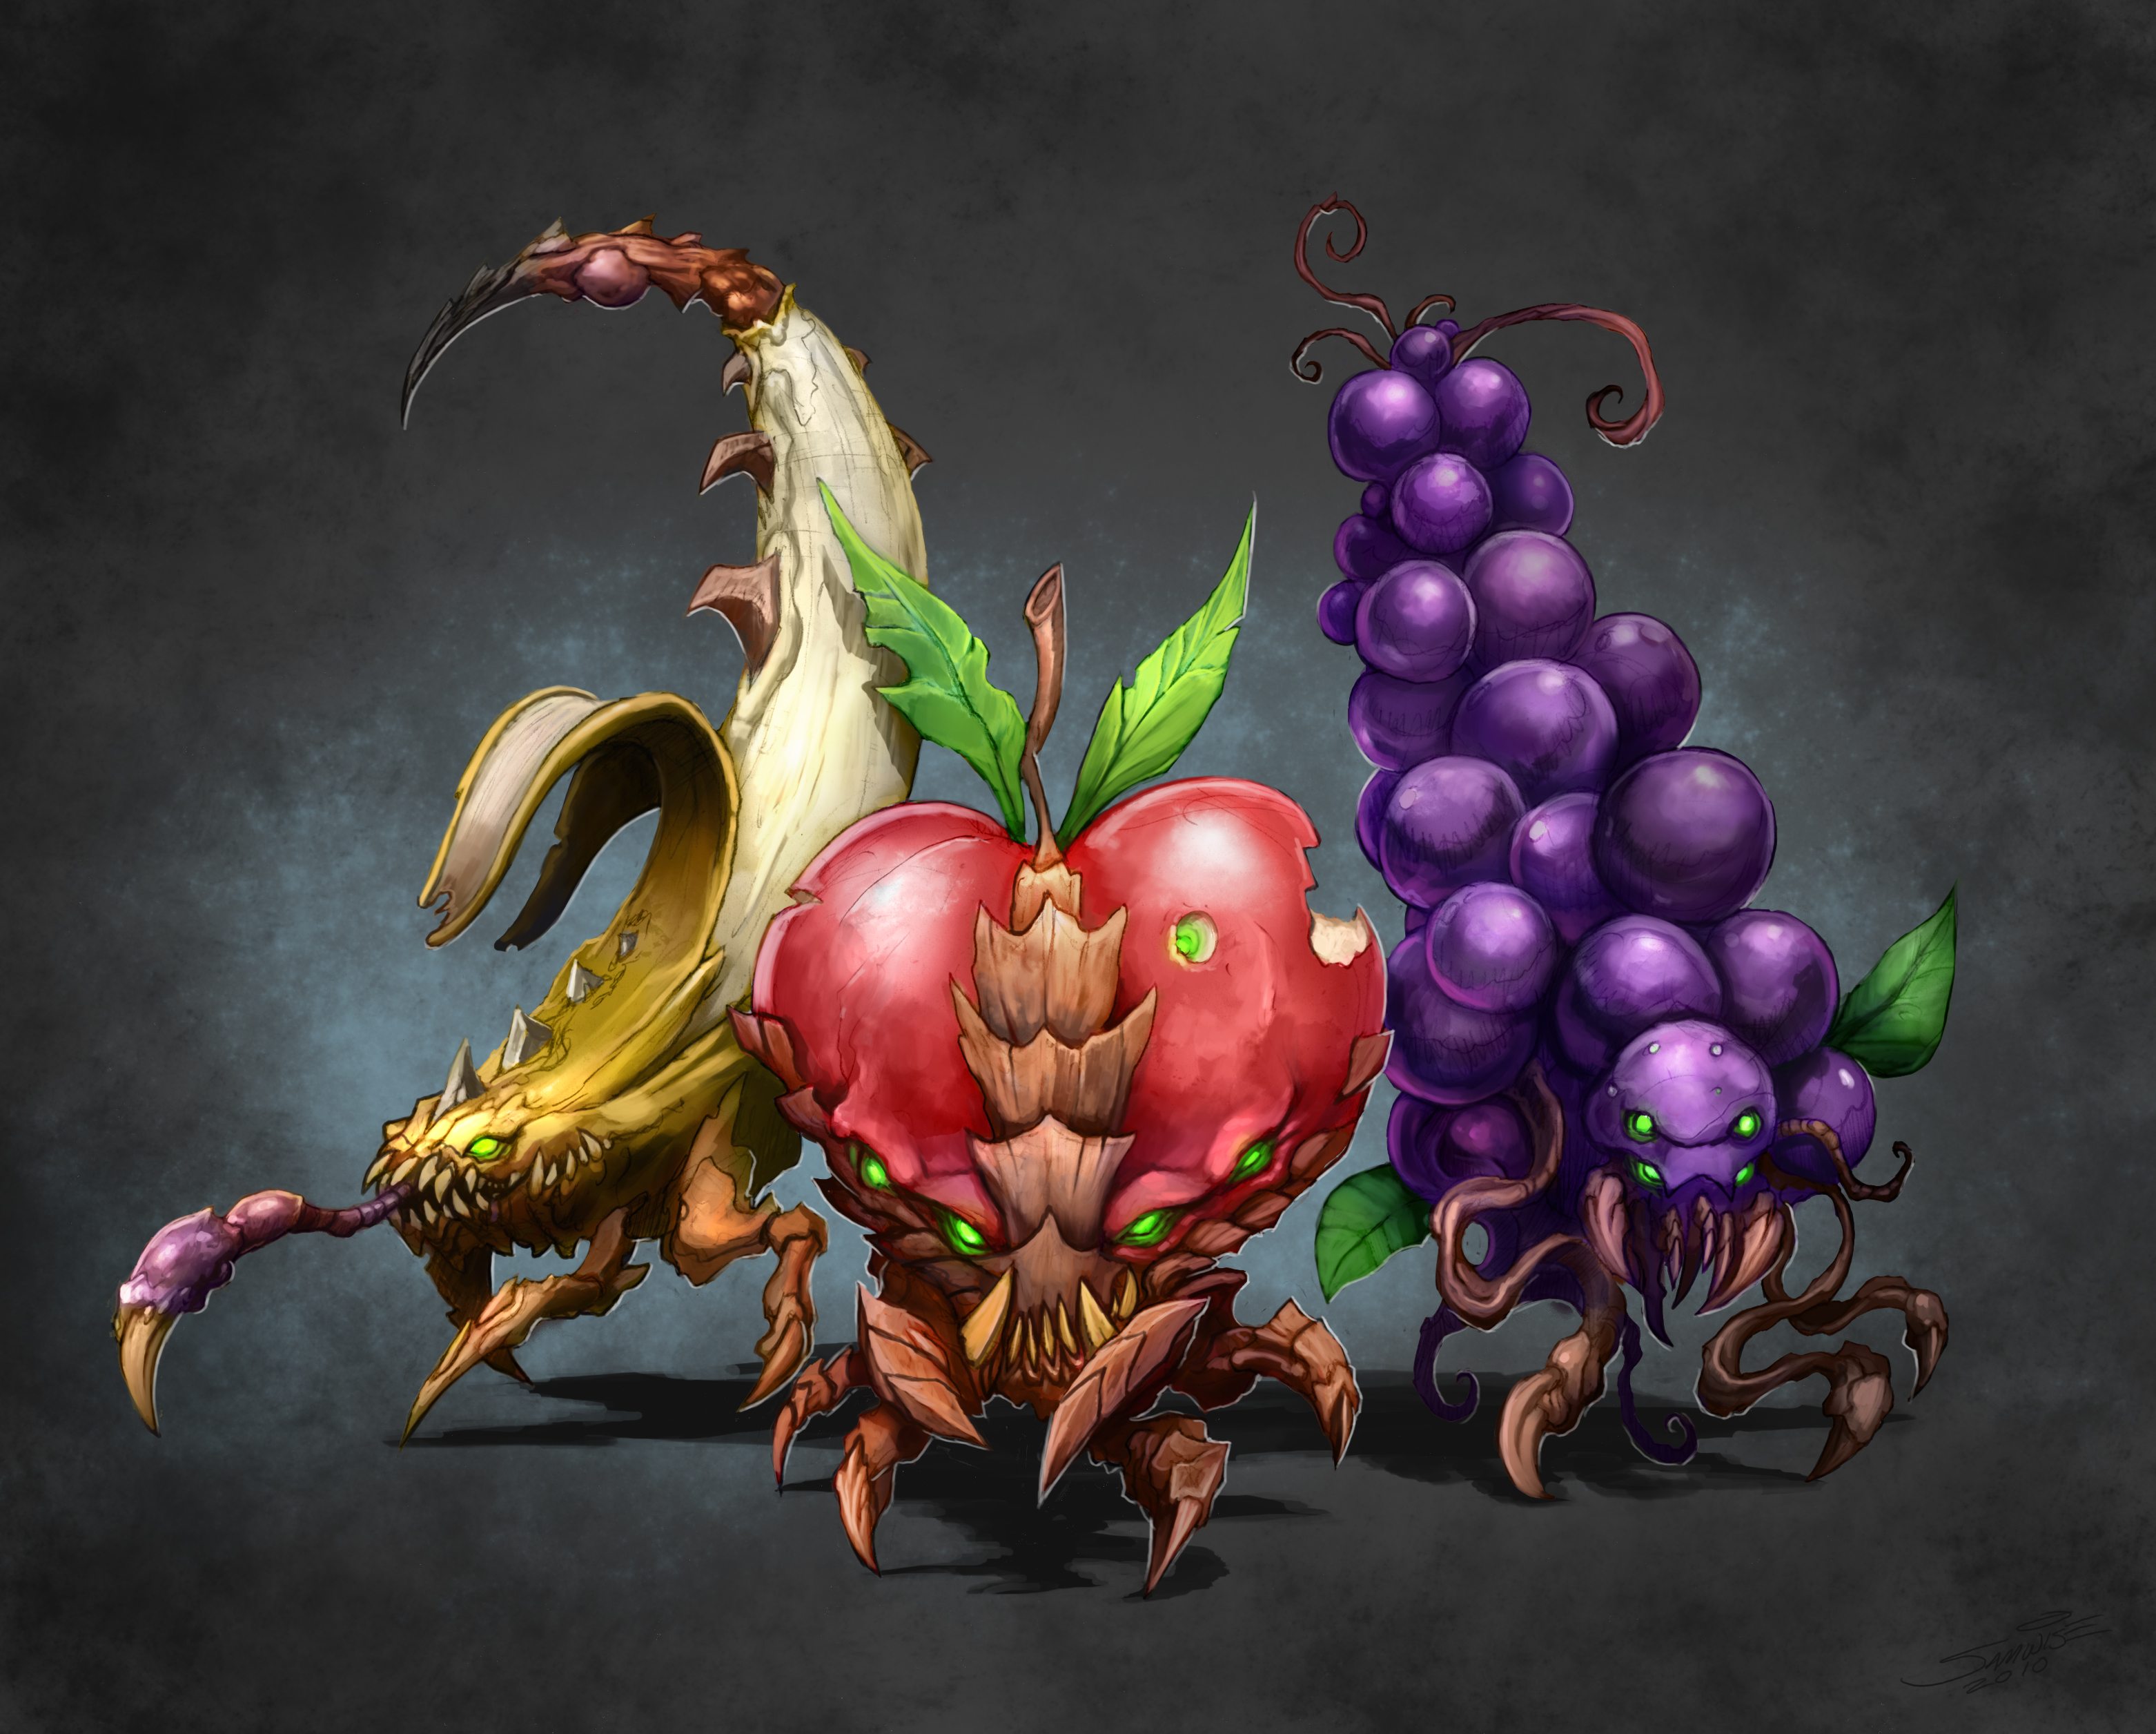 StarCraft, fruits, Zerg - desktop wallpaper